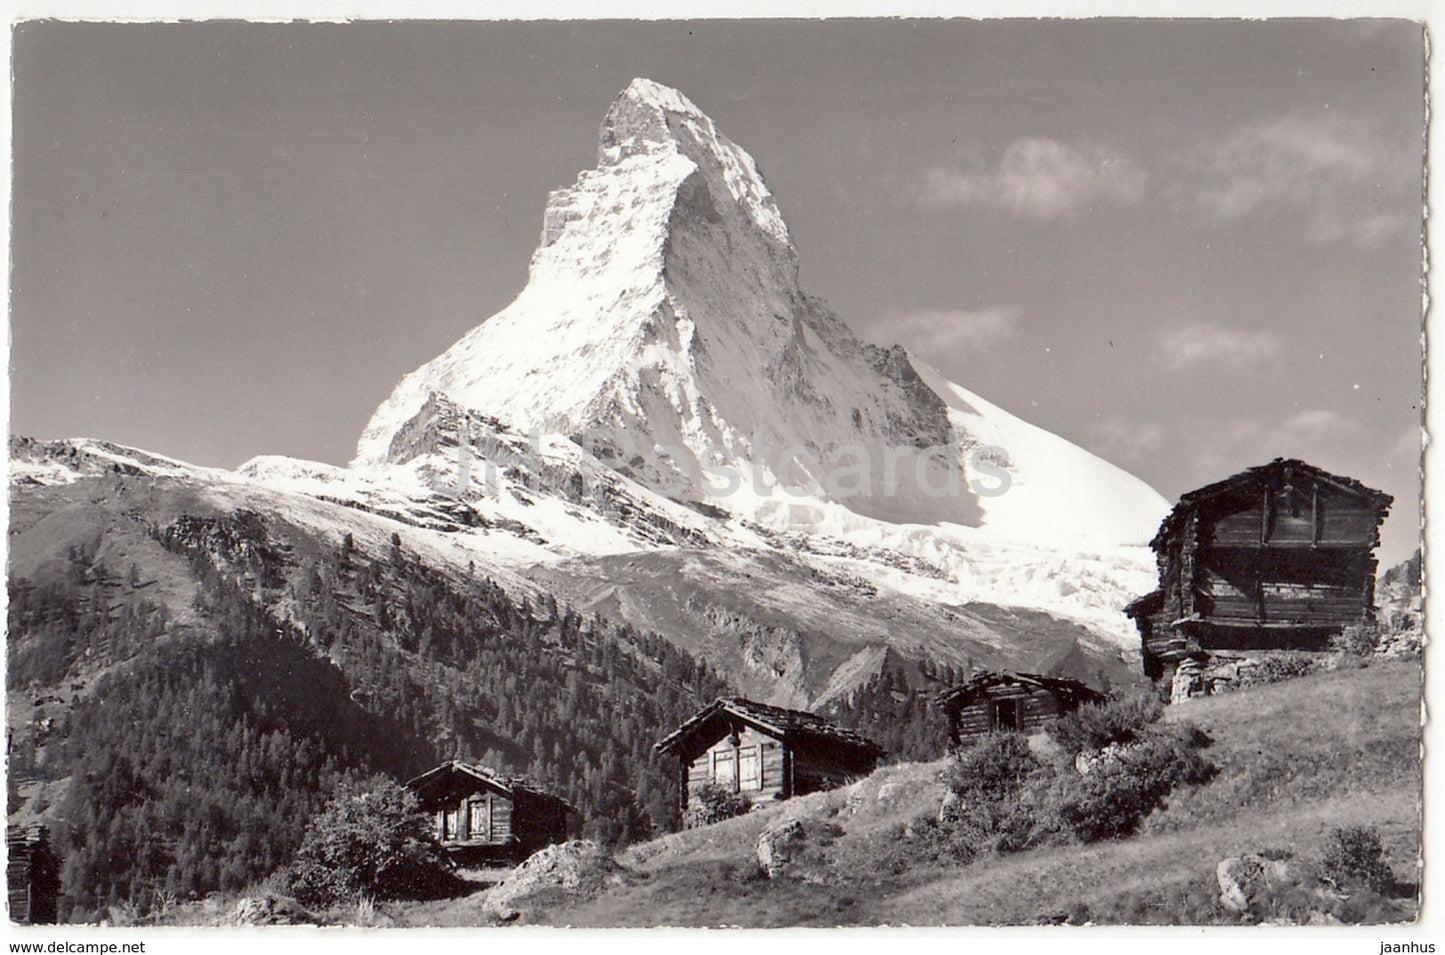 Zermatt - Winkelmatten mit Mattehorn - 12306 - Switzerland - old postcard - unused - JH Postcards